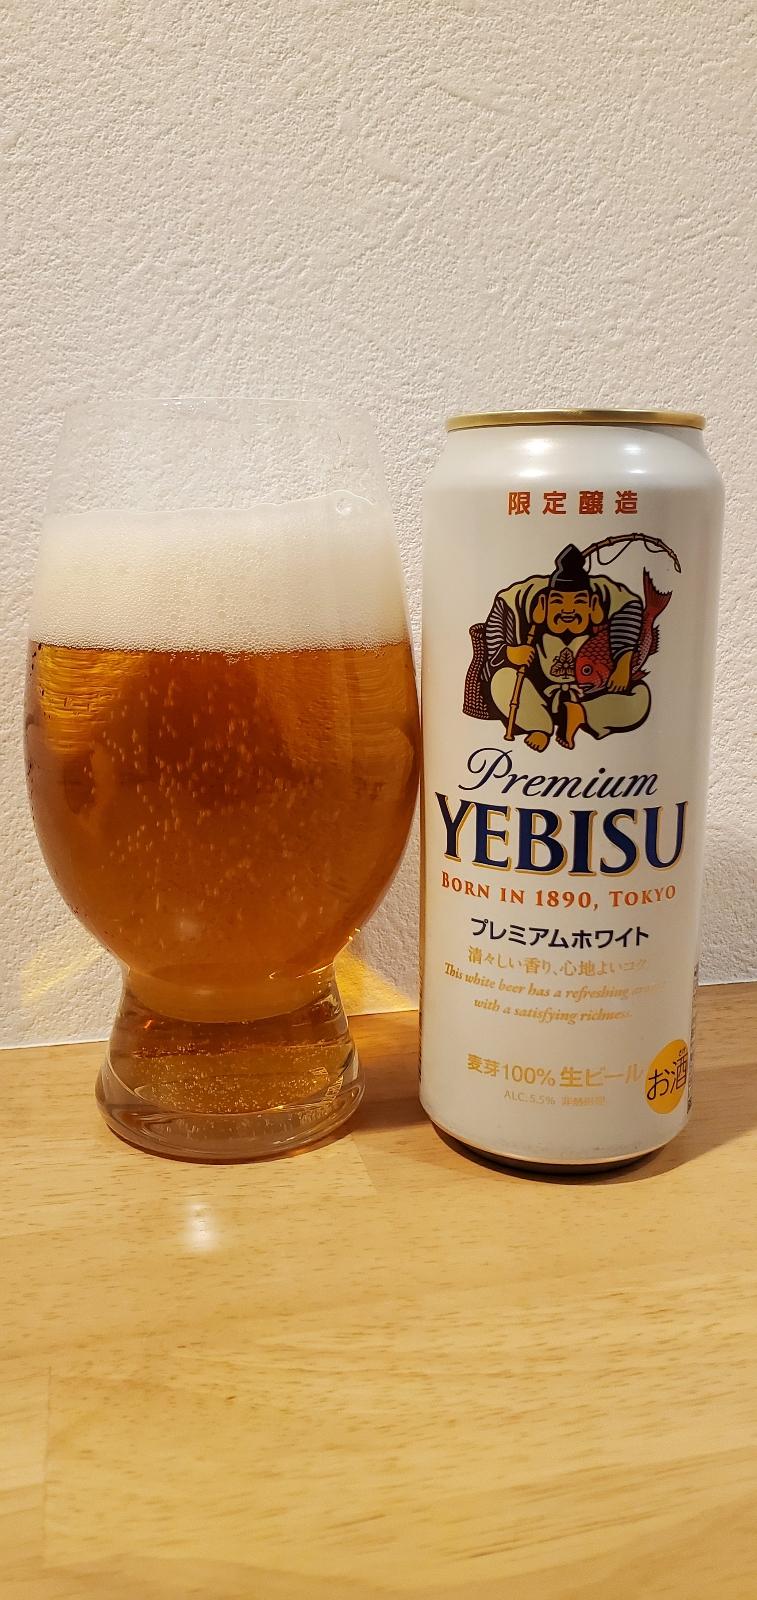 Yebisu Premium White (2021)